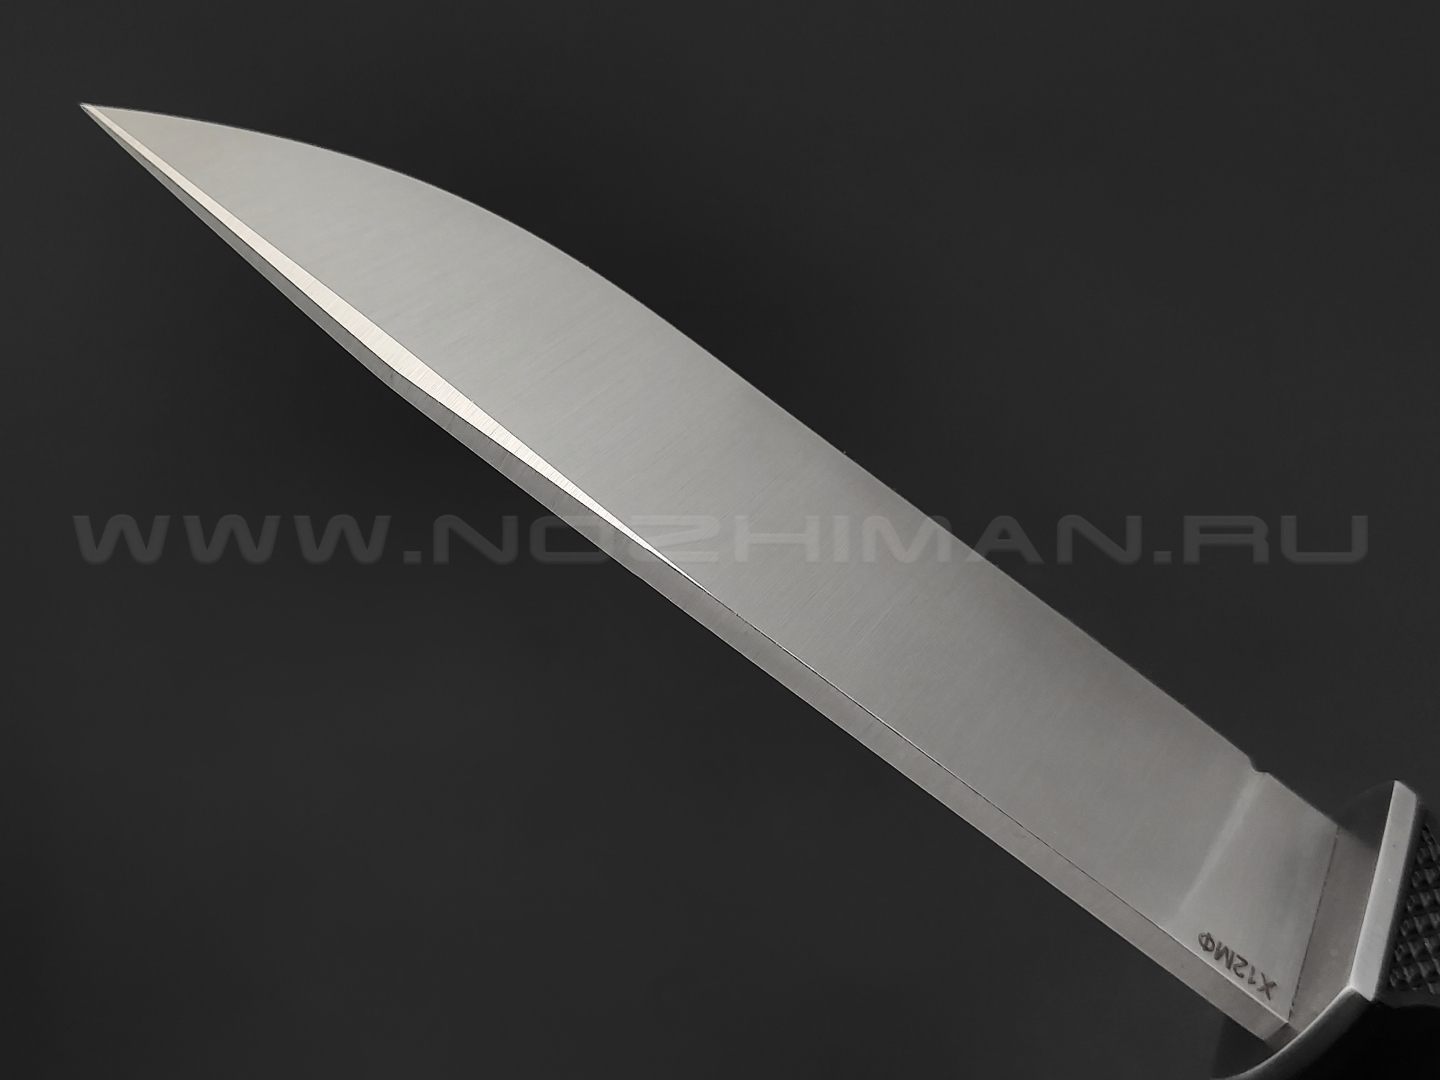 Saro нож Финский сталь Х12МФ, рукоять резина